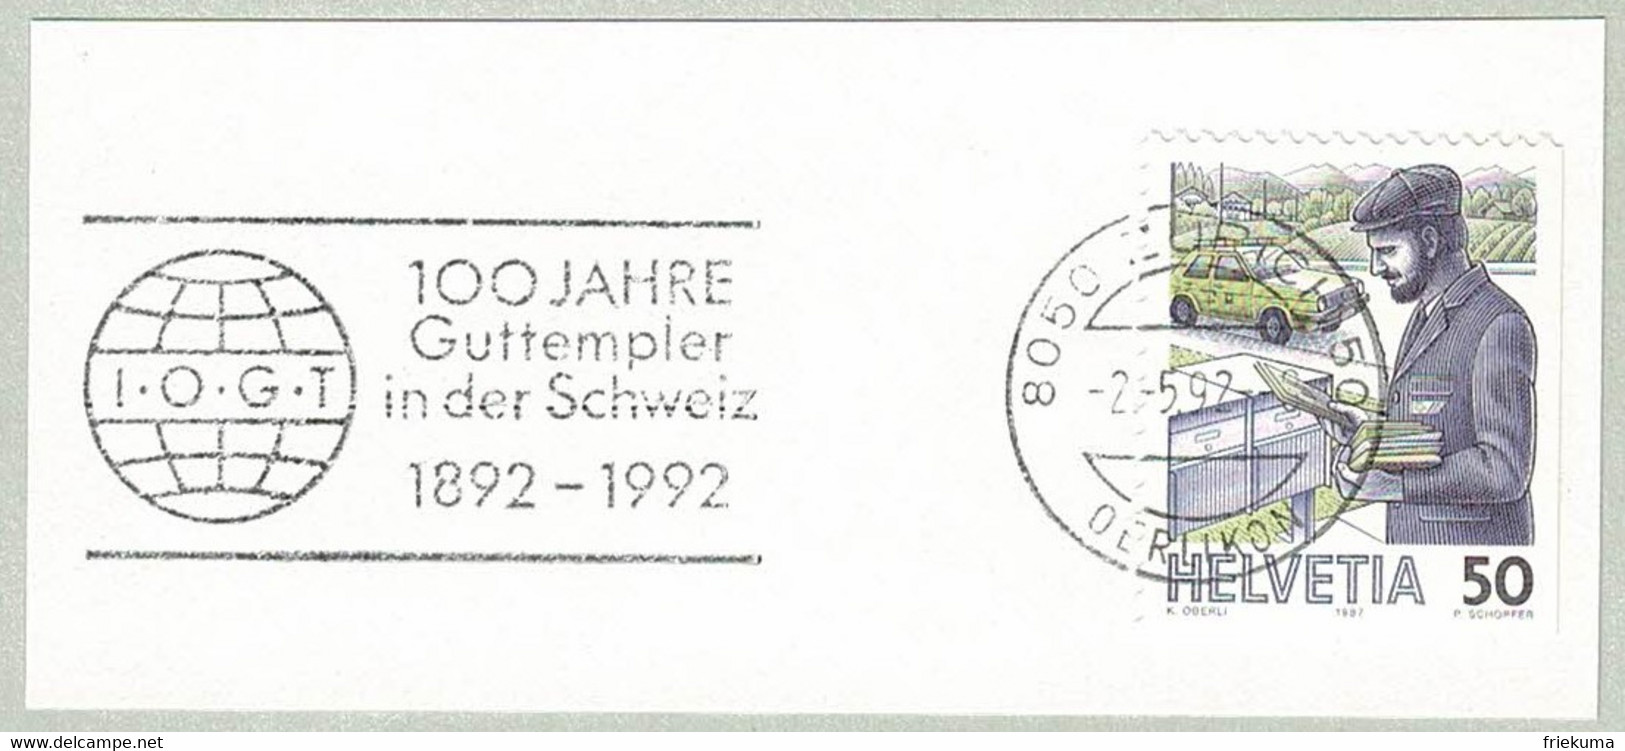 Schweiz / Helvetia 1992, Flaggenstempel Guttempler Zürich, Abstinenz, Alkohol, Drogen, Good Templars - Drogue